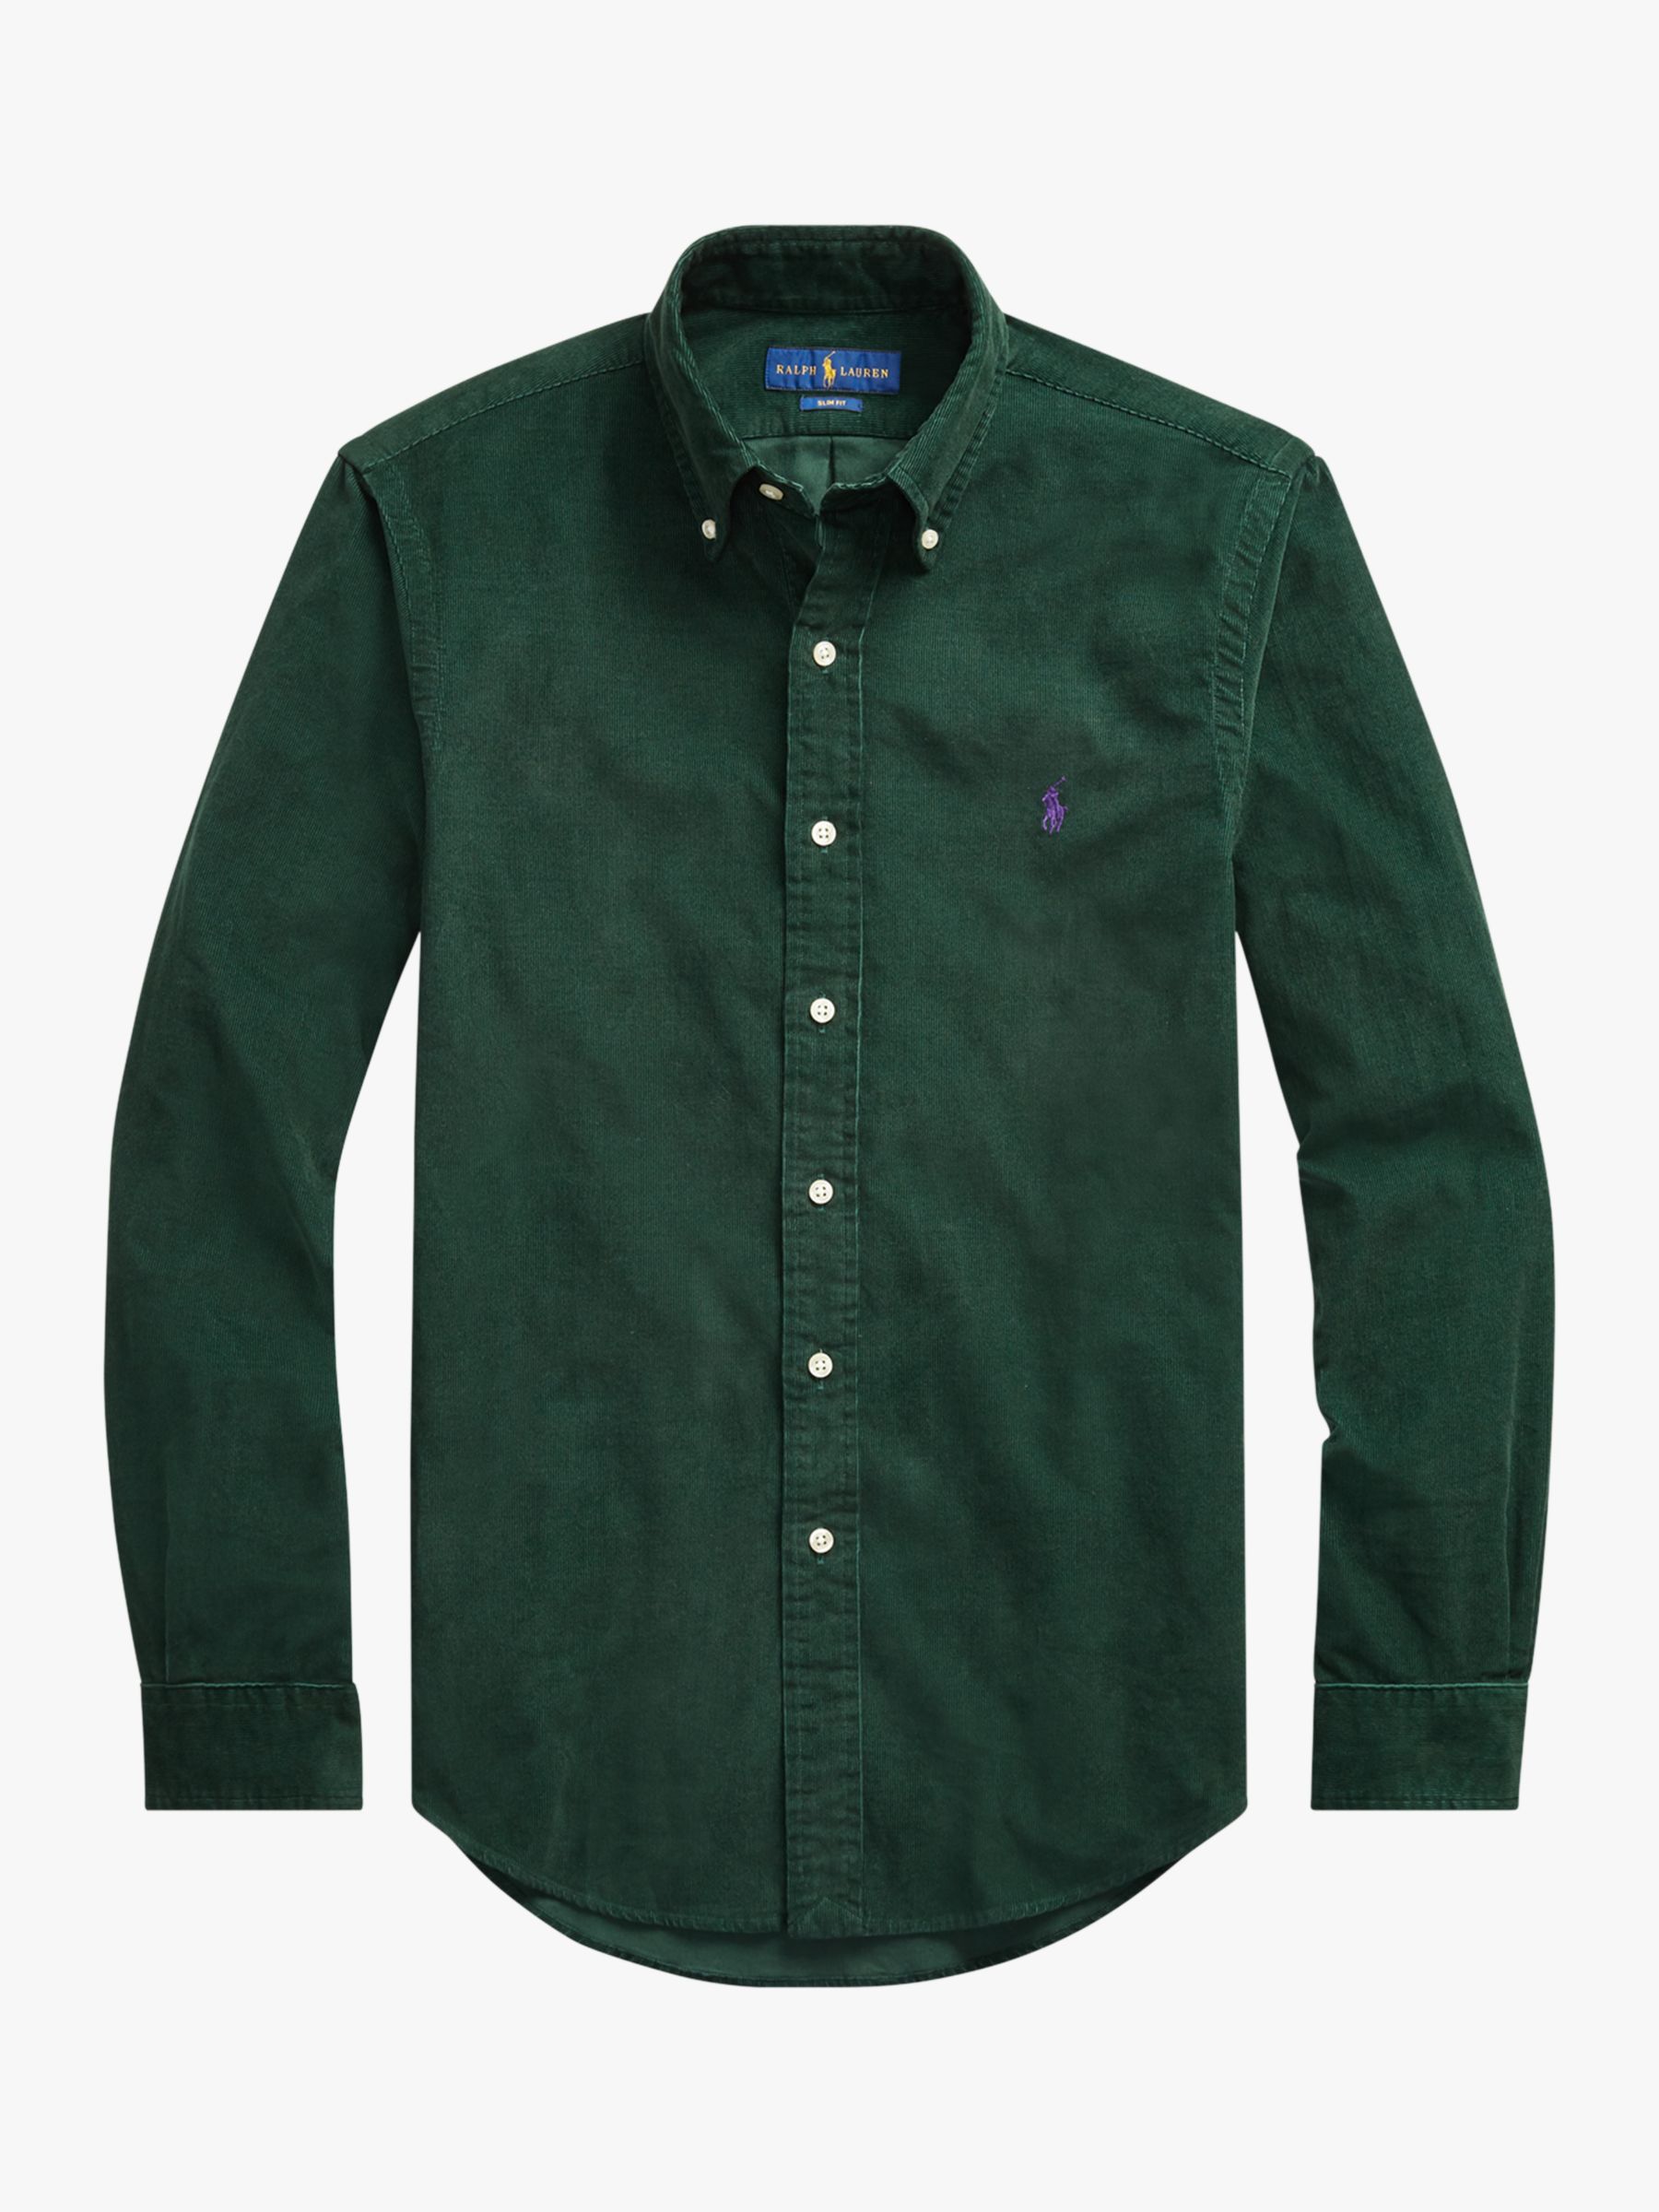 polo ralph lauren shirt green